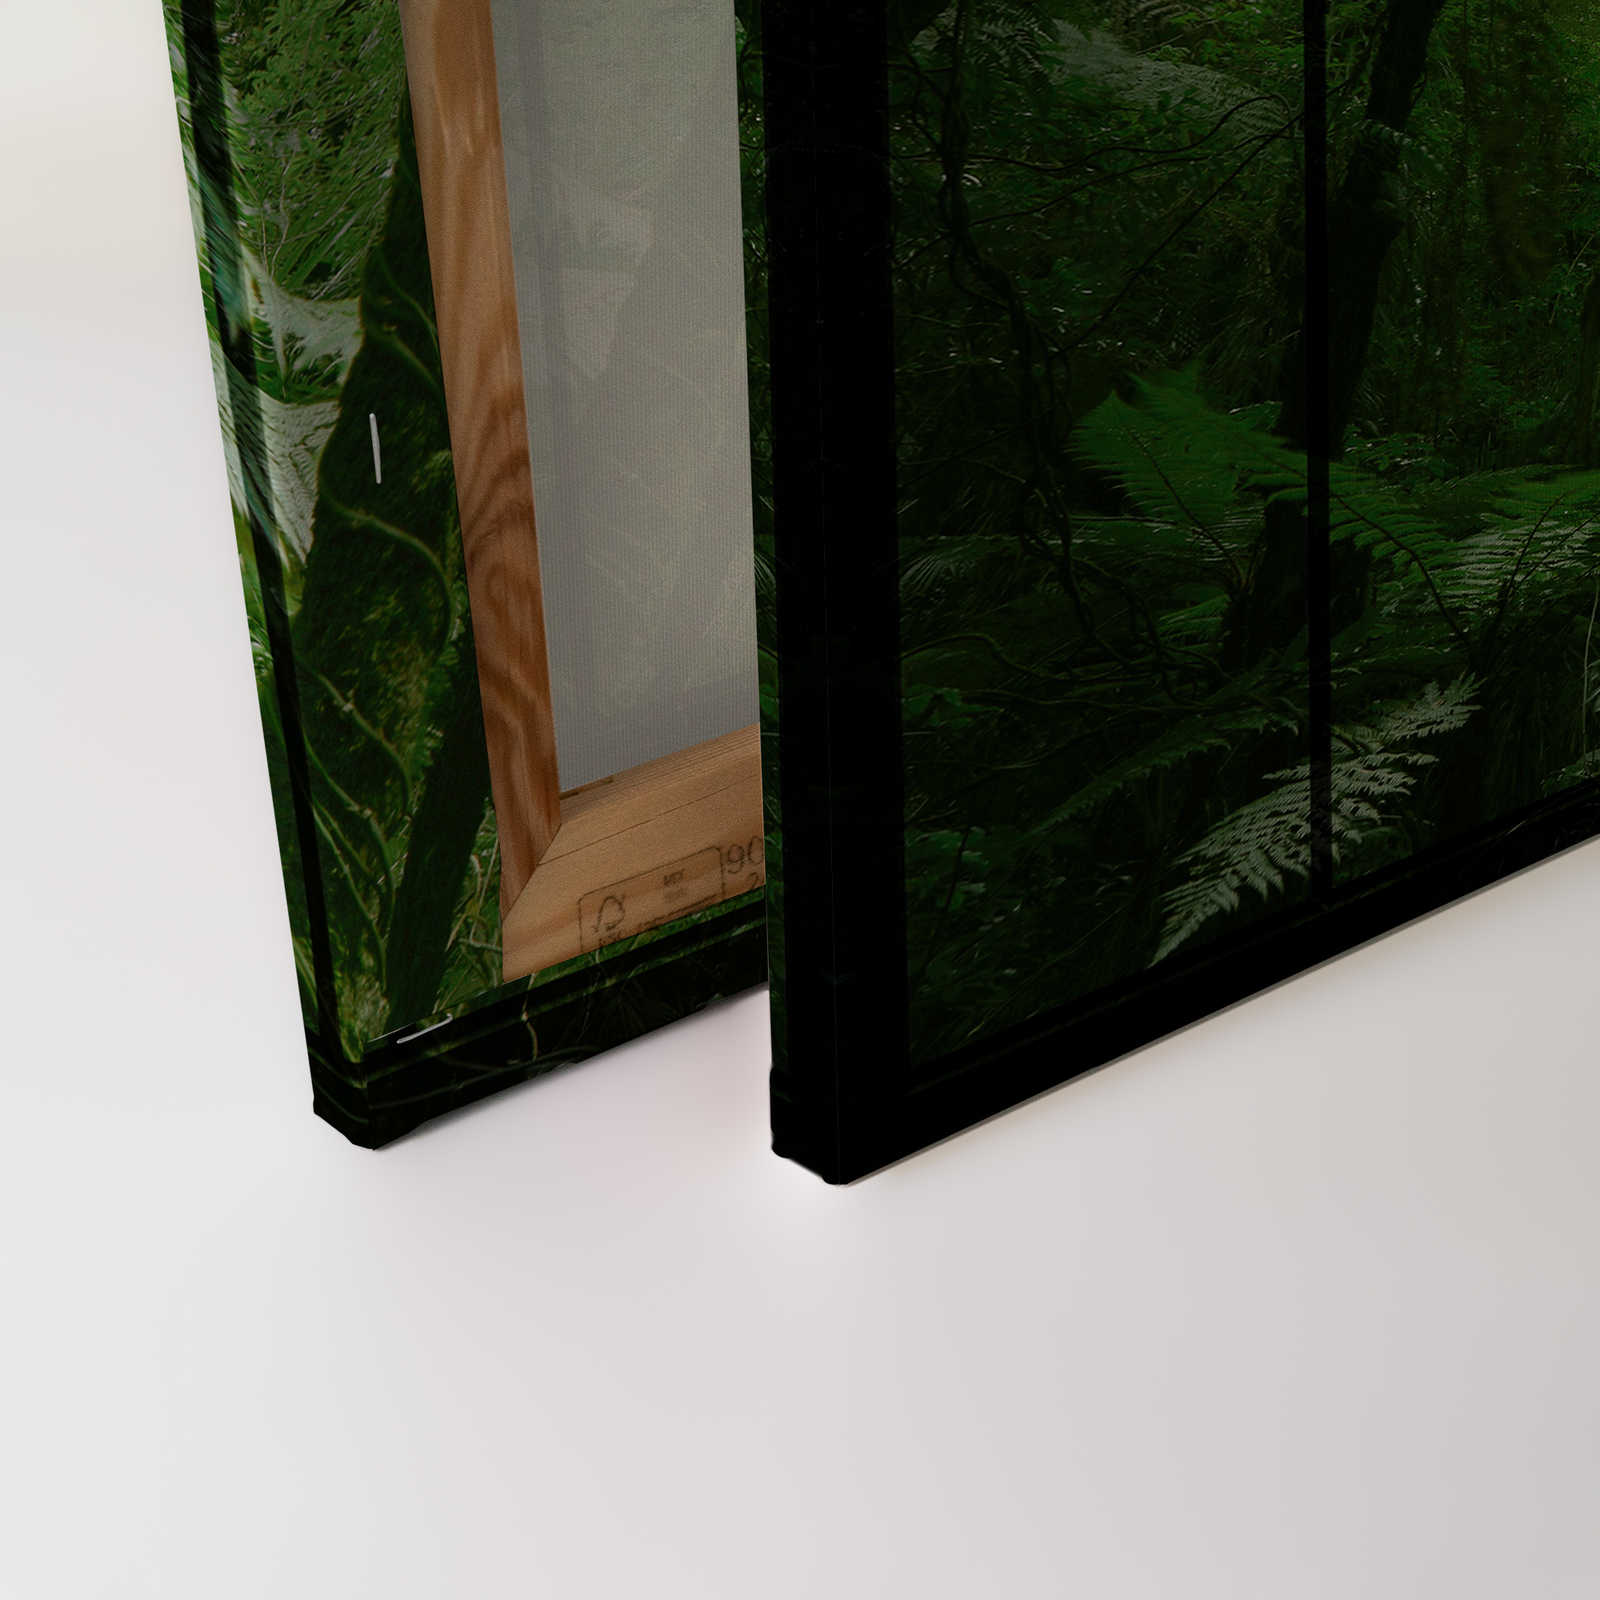             Rainforest 2 - Quadro su tela della finestra del loft con vista sulla giungla - 0,90 m x 0,60 m
        